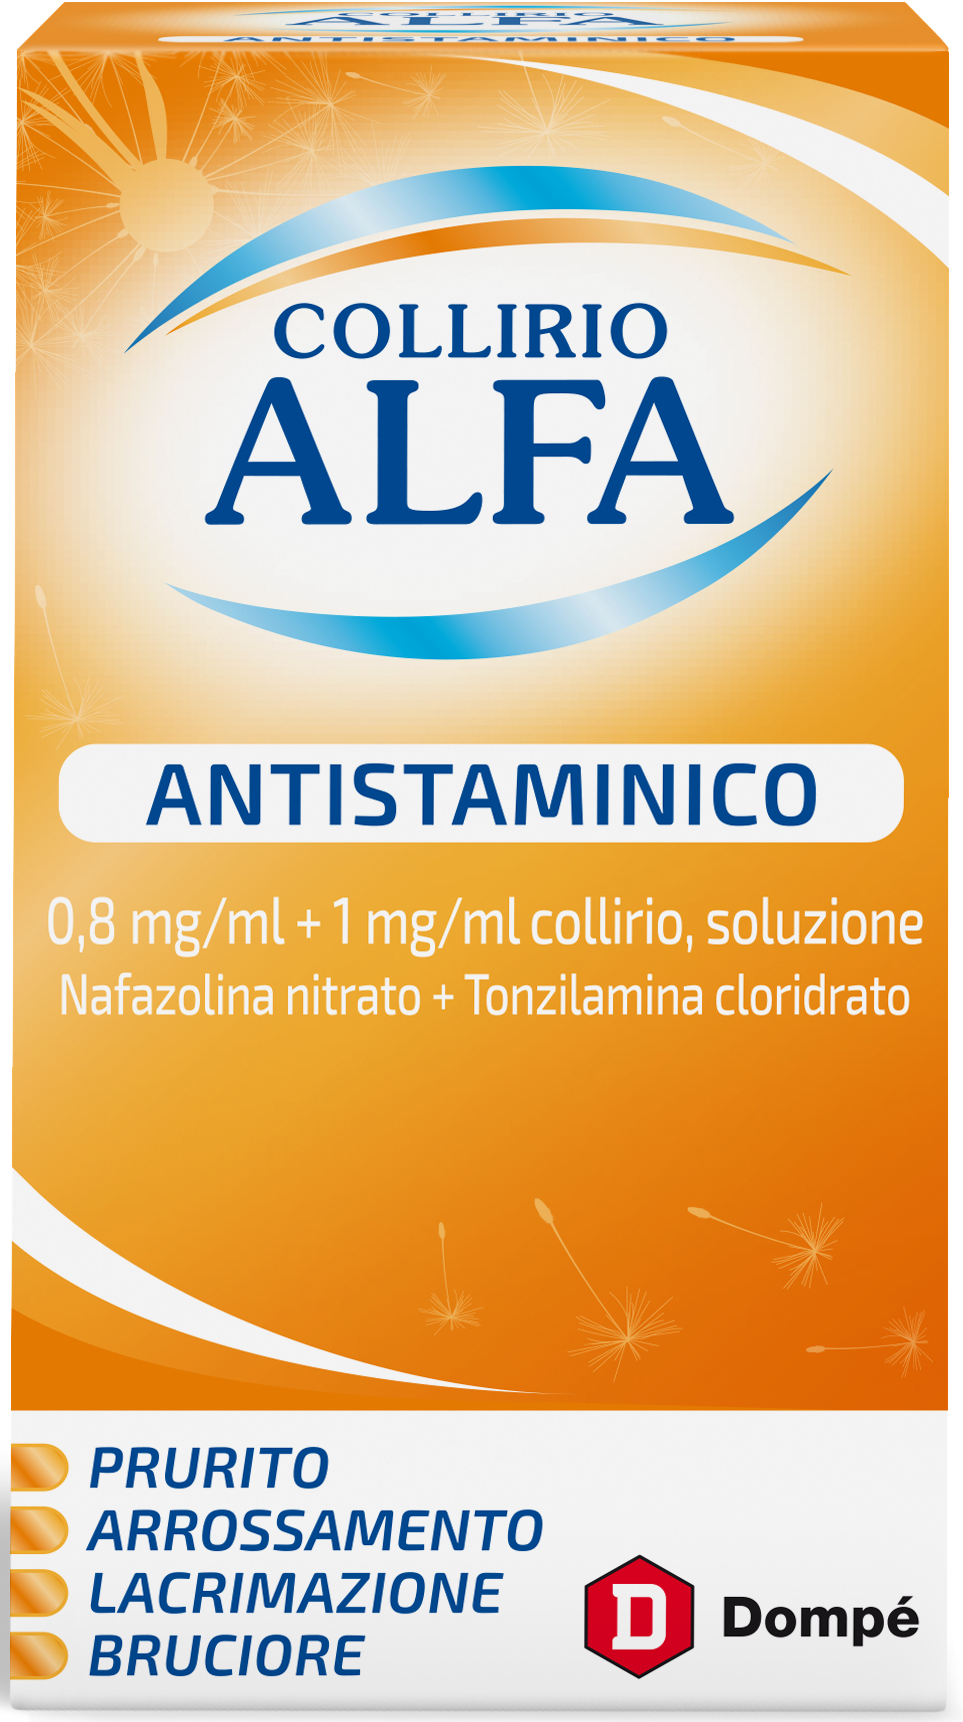 COLLIRIO ALFA ANTISTAMINICO 0,8 MG/ML + 1 MG/ML COLLIRIO, SOLUZIONE